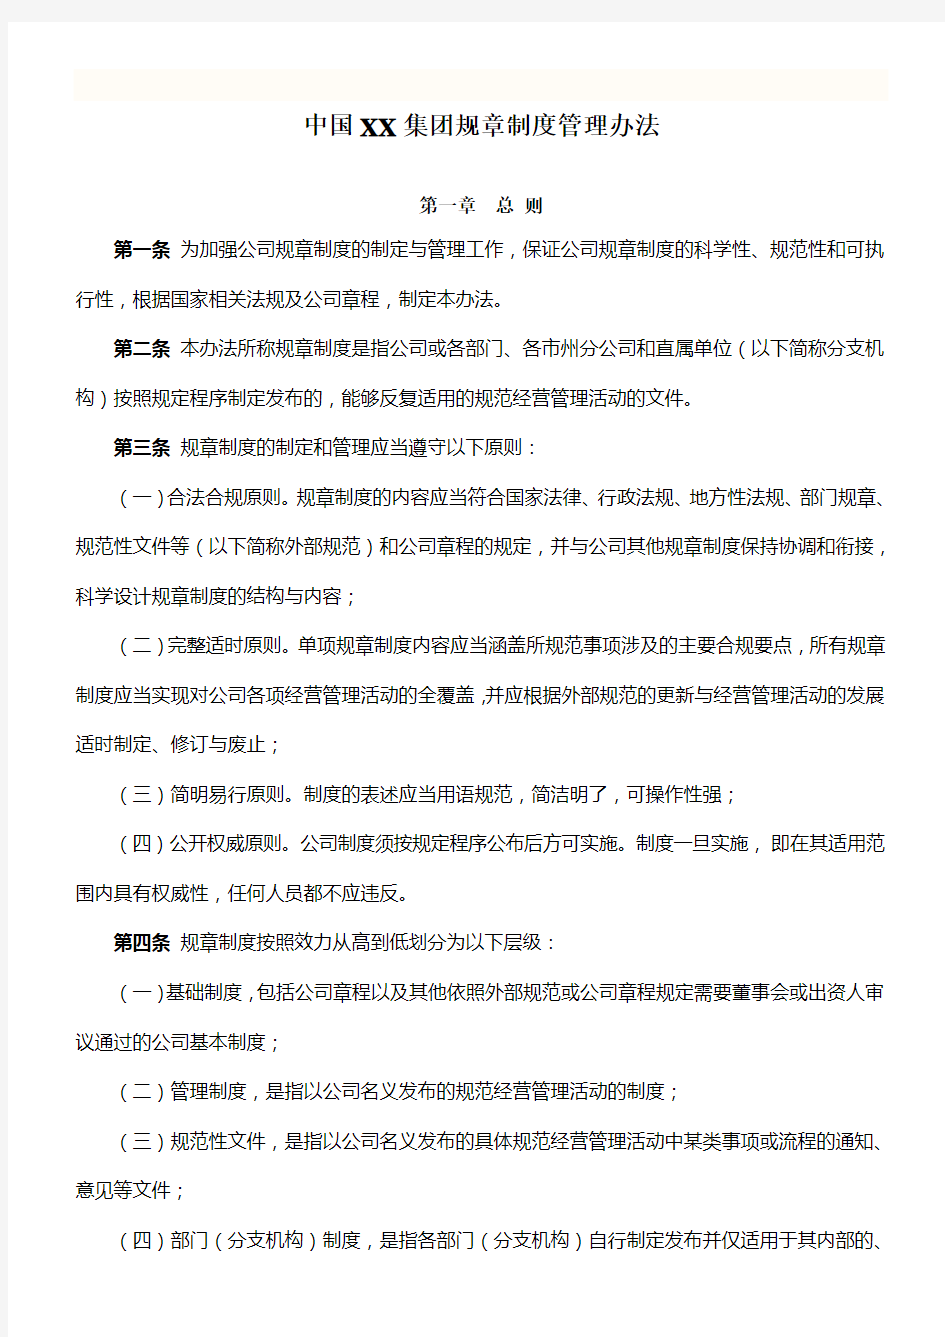 中国集团规章制度管理办法